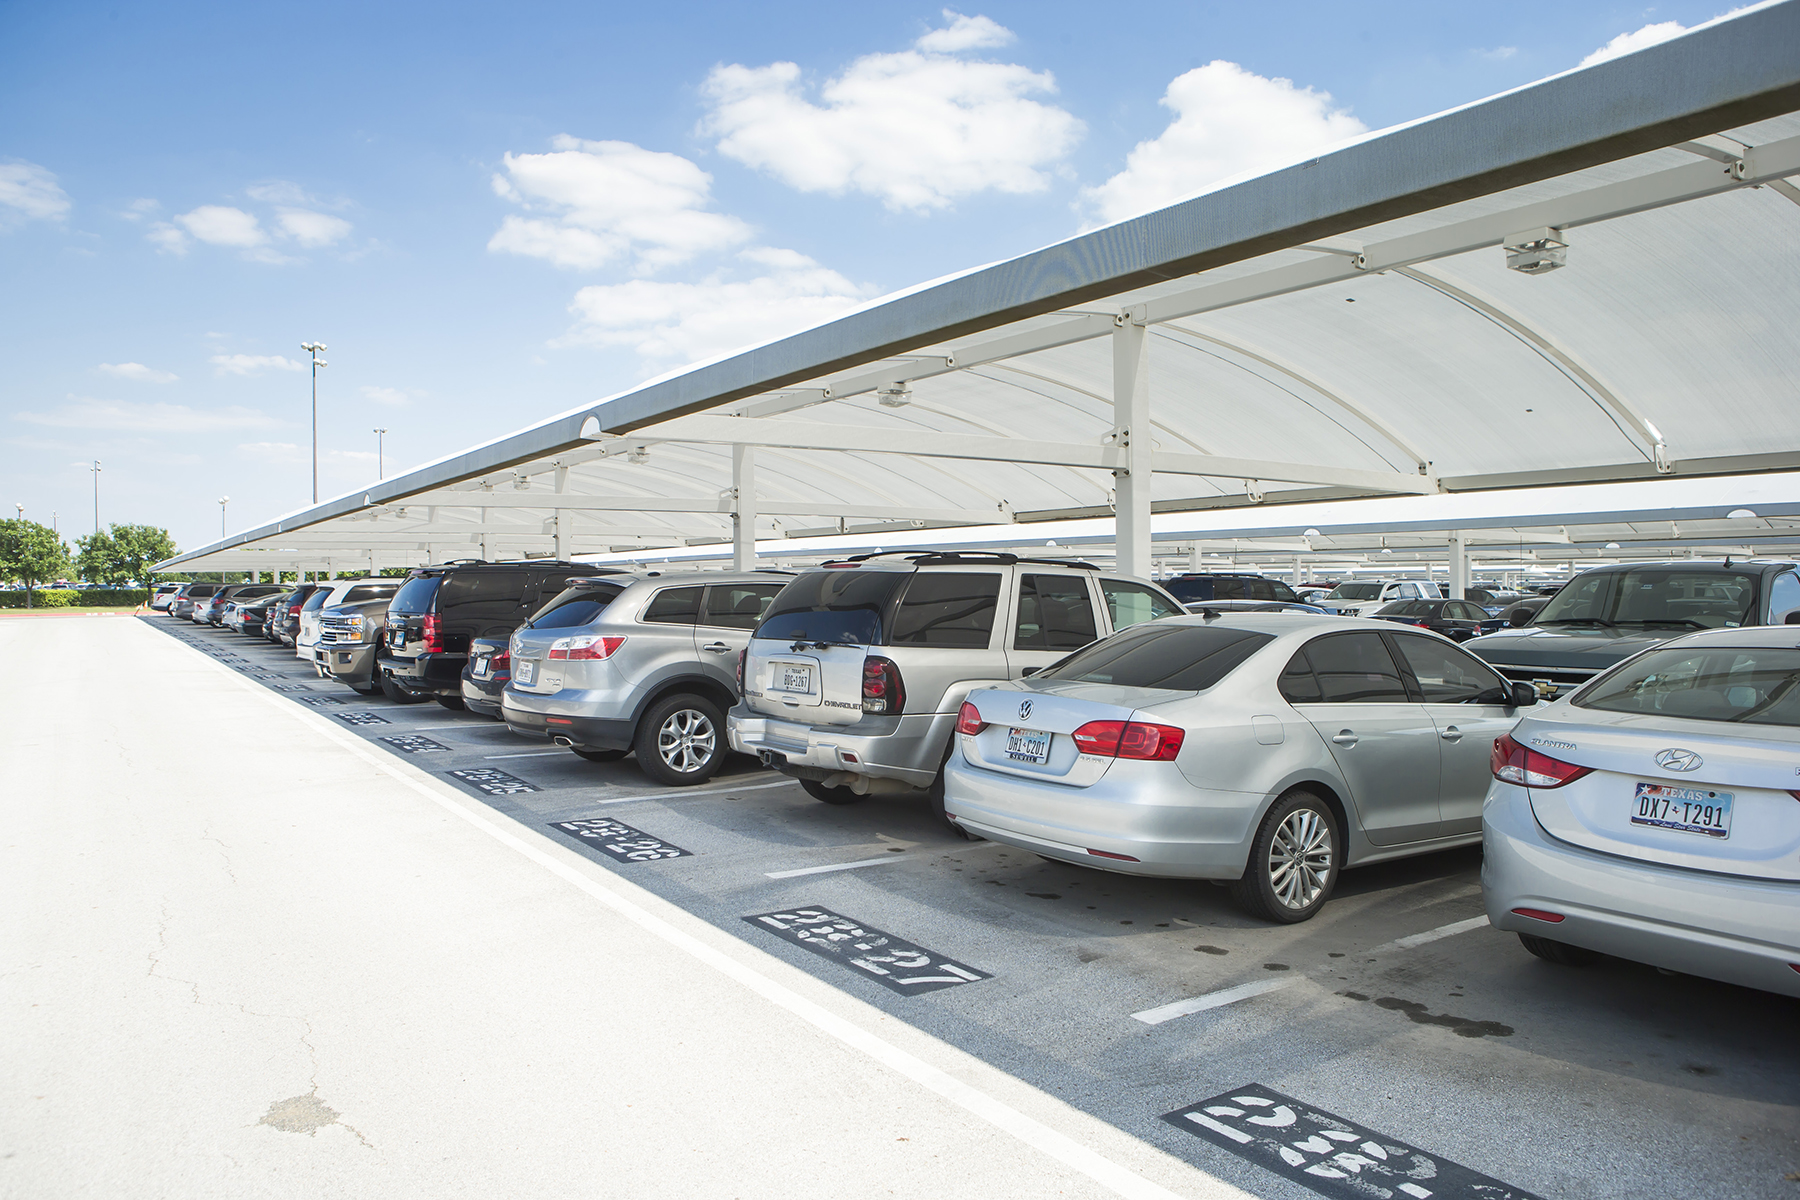 DFW International Airport Express Parking